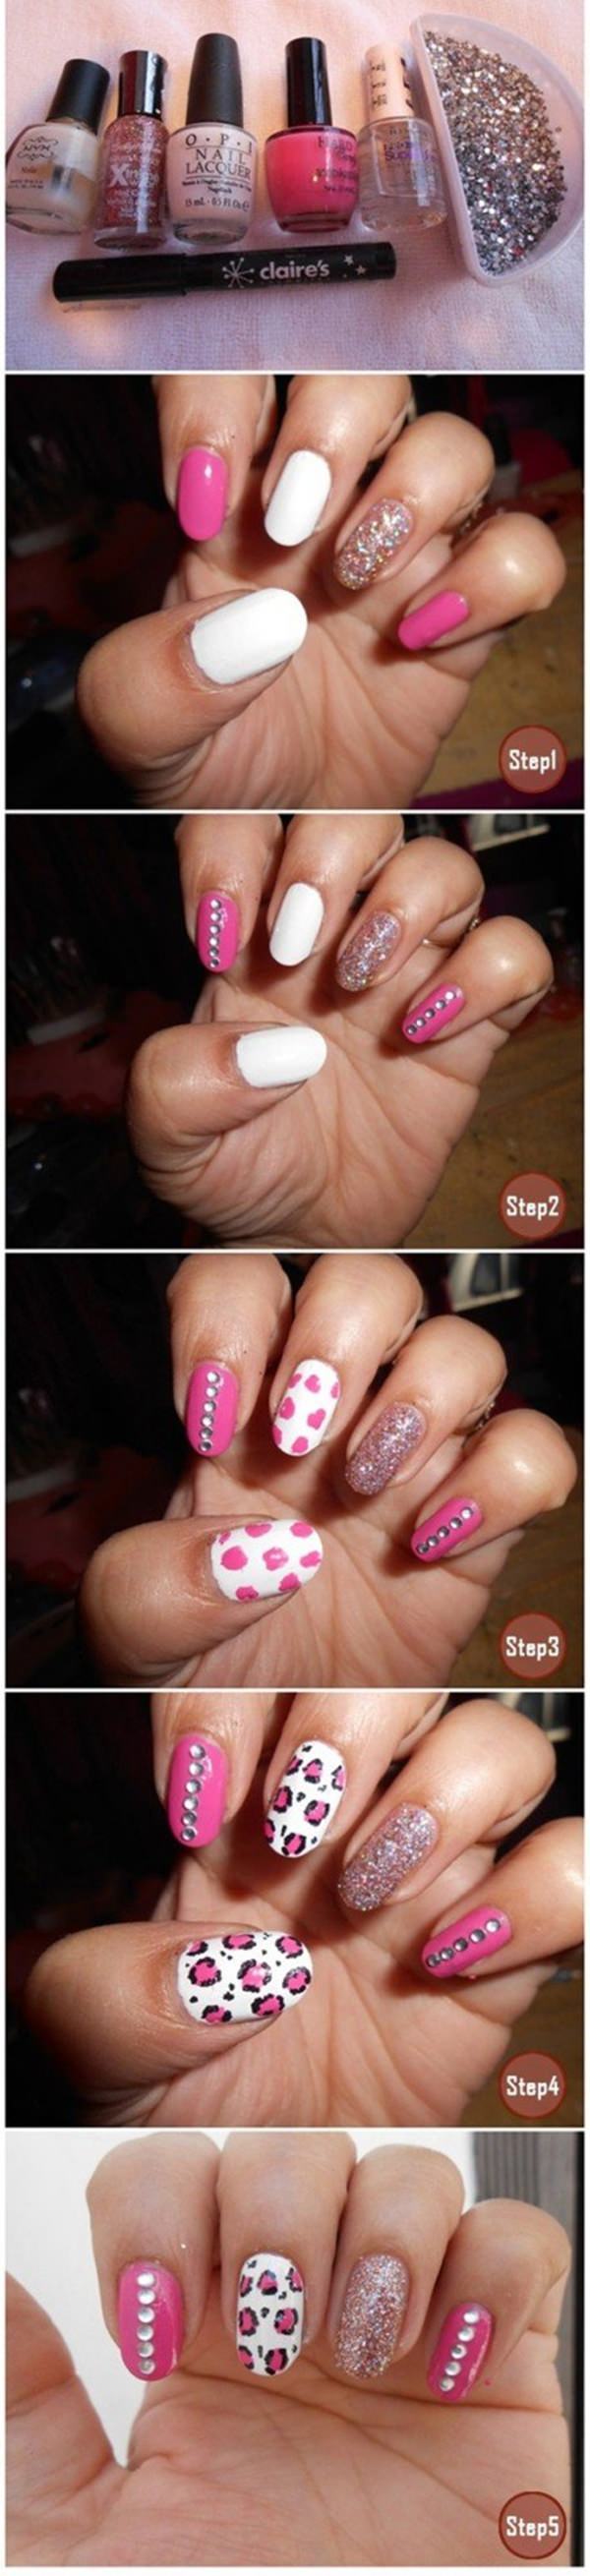 10020216-pink-nail-designs